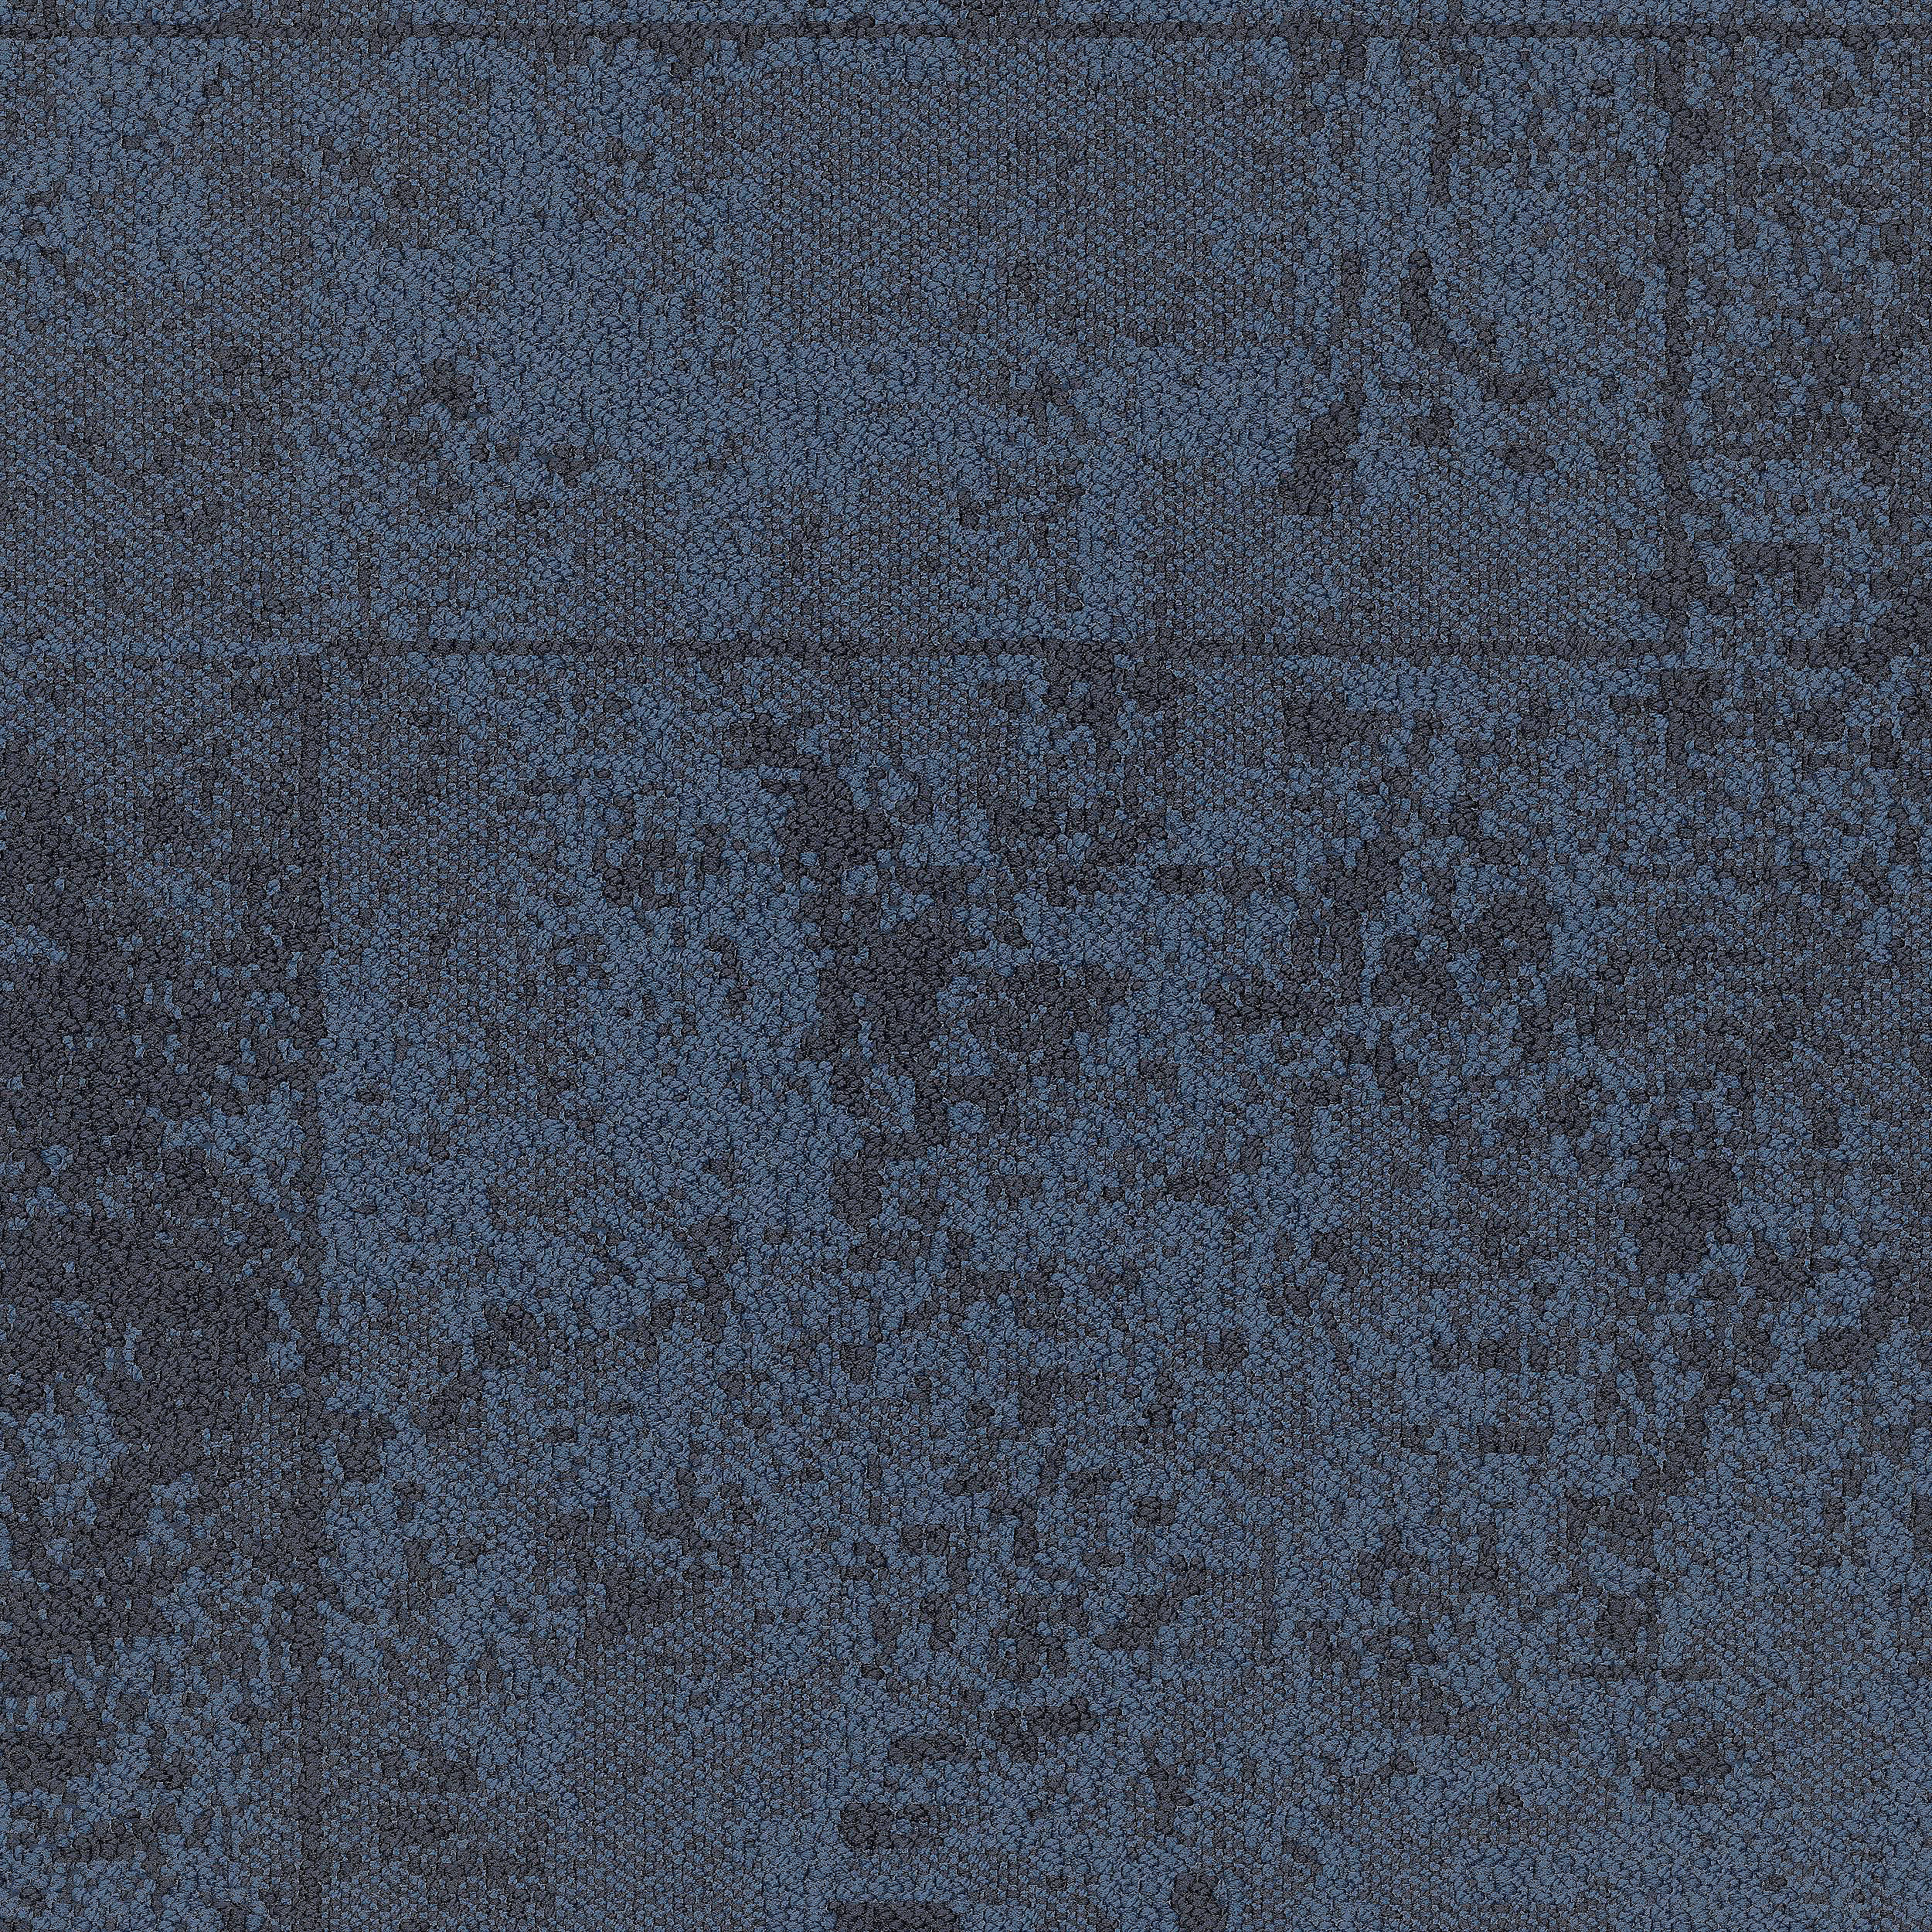 B603 Carpet Tile In Pacific afbeeldingnummer 10